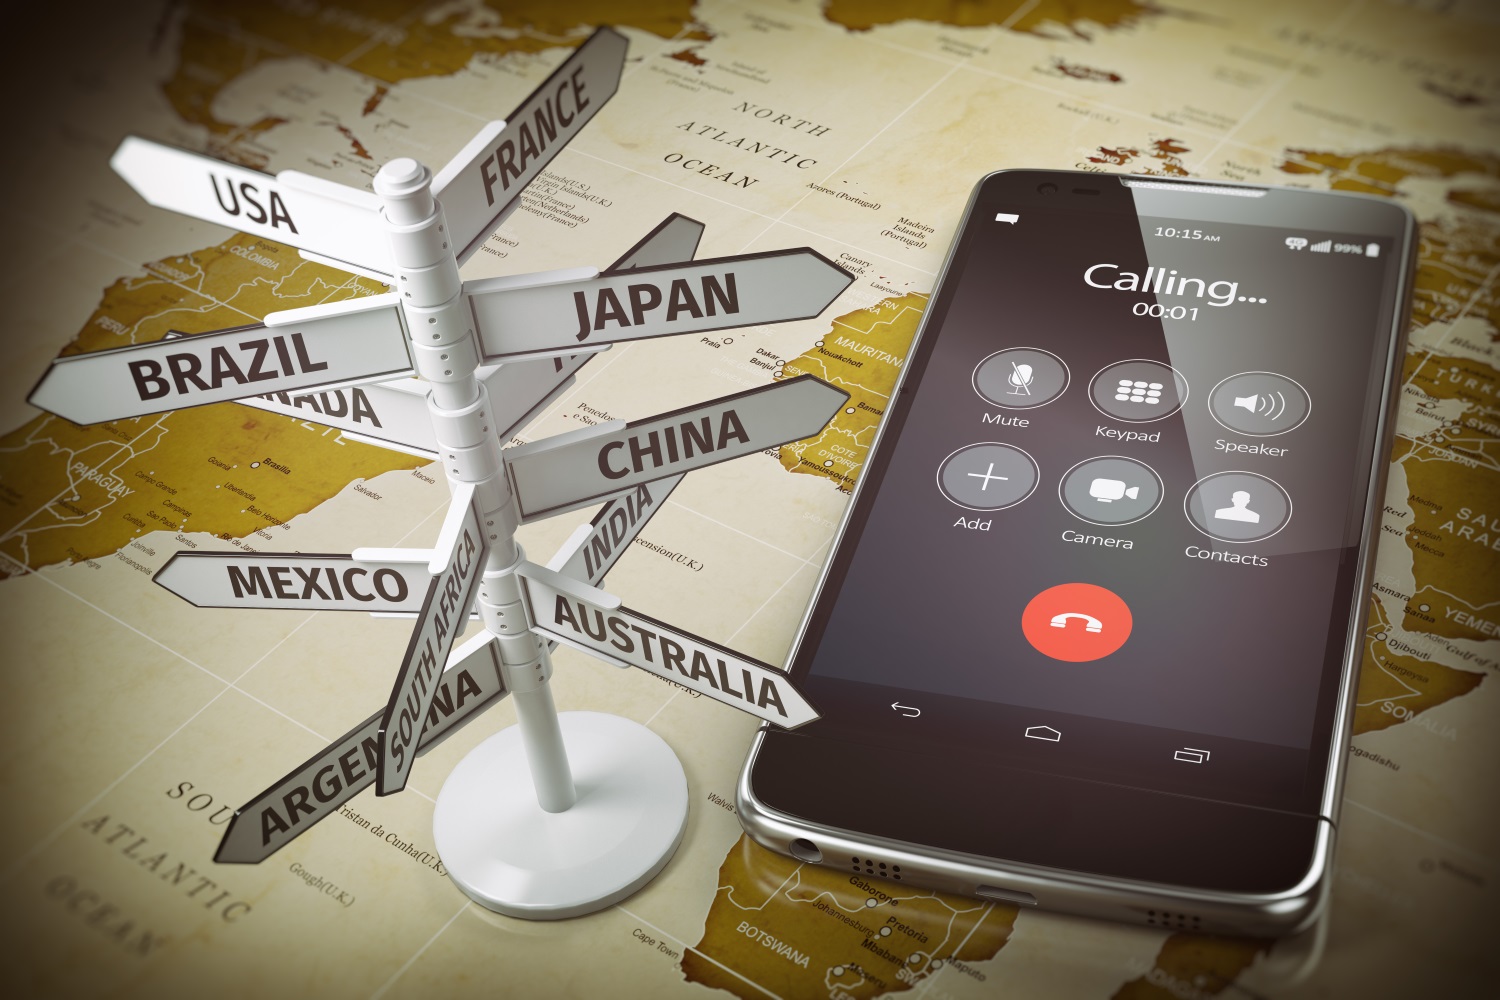 Speicher Deine Kontakte vor der Reise mit einer internationalen Vorwahl. Dann kannst Du mit dem Smartphone im Ausland problemlos telefonieren.